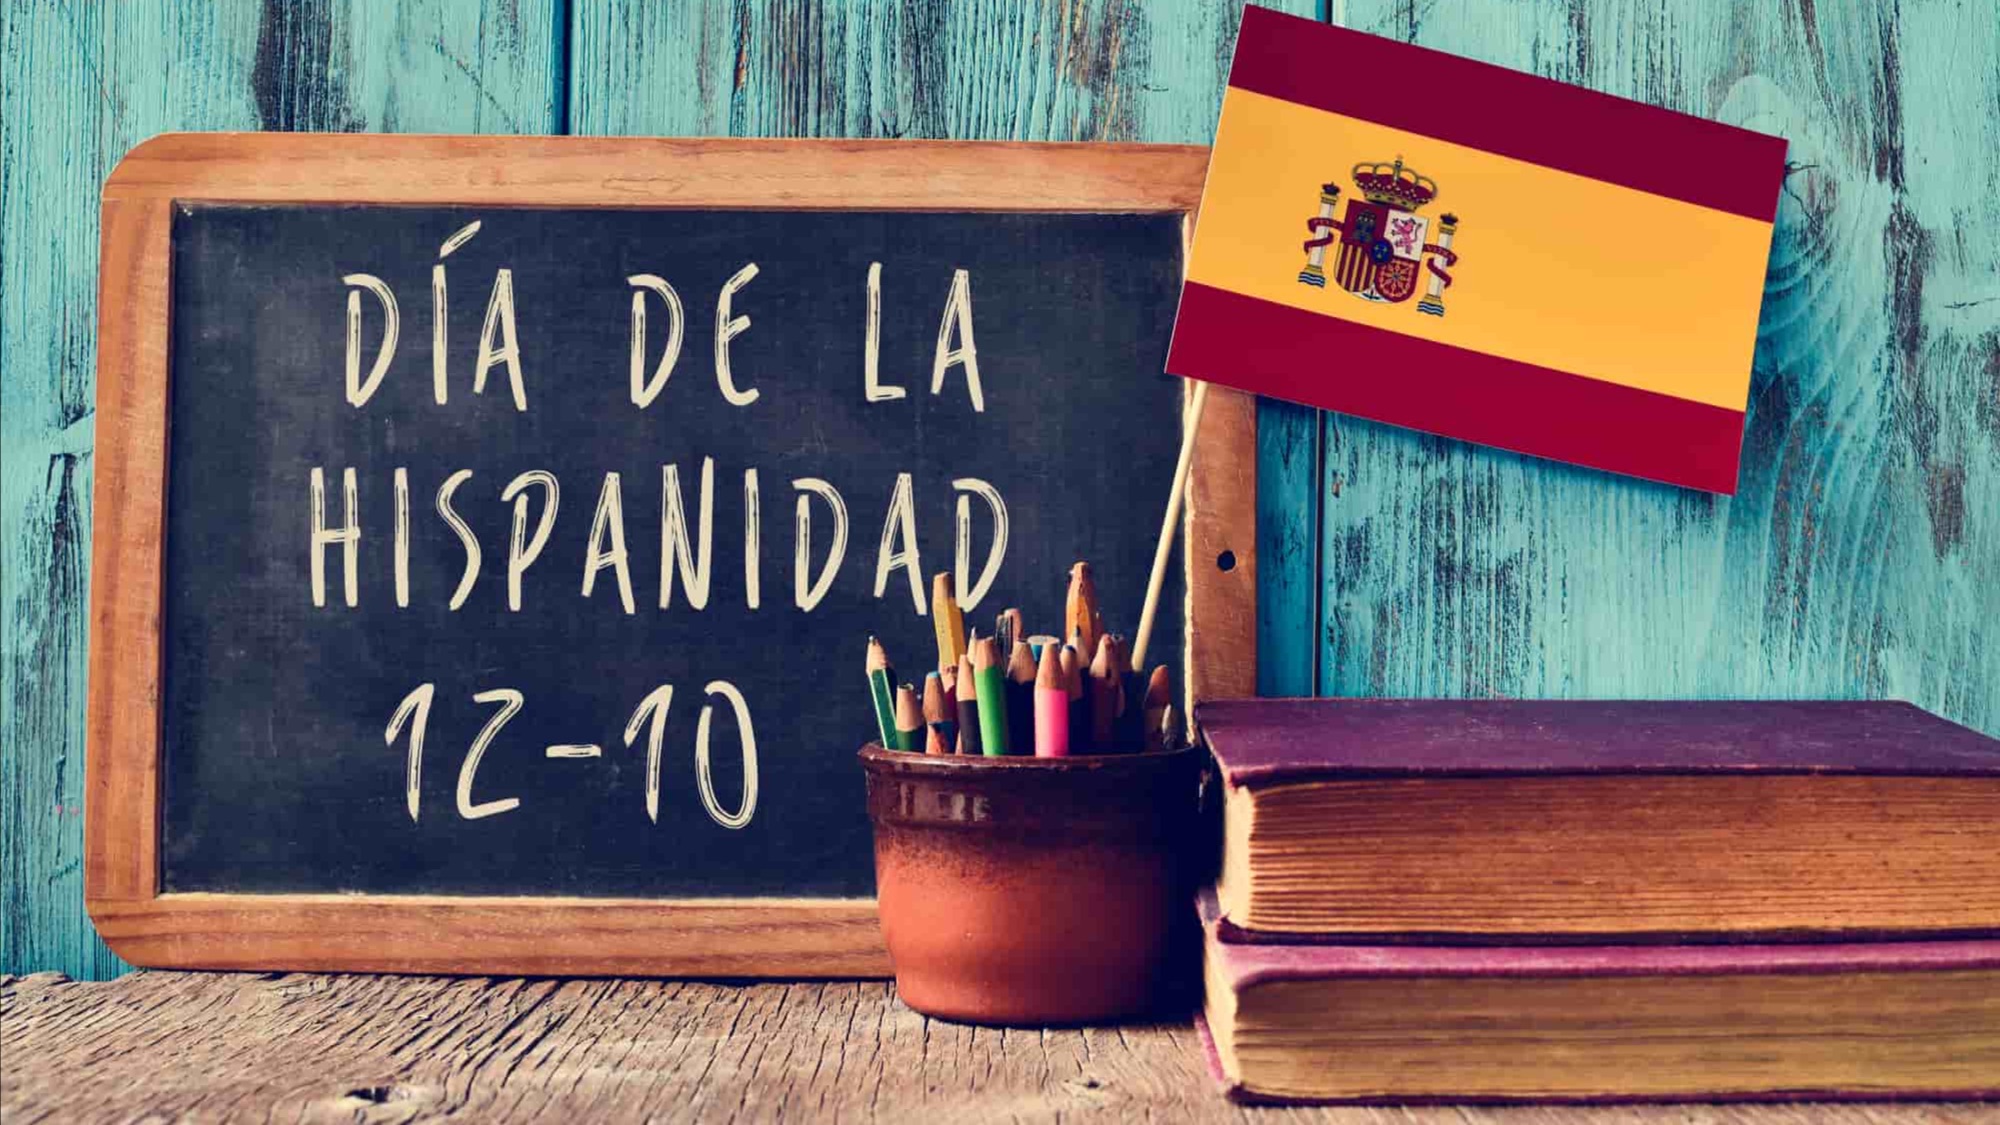 ¡Feliz Día de la Hispanidad! 西班牙国庆节快乐！ - 哔哩哔哩